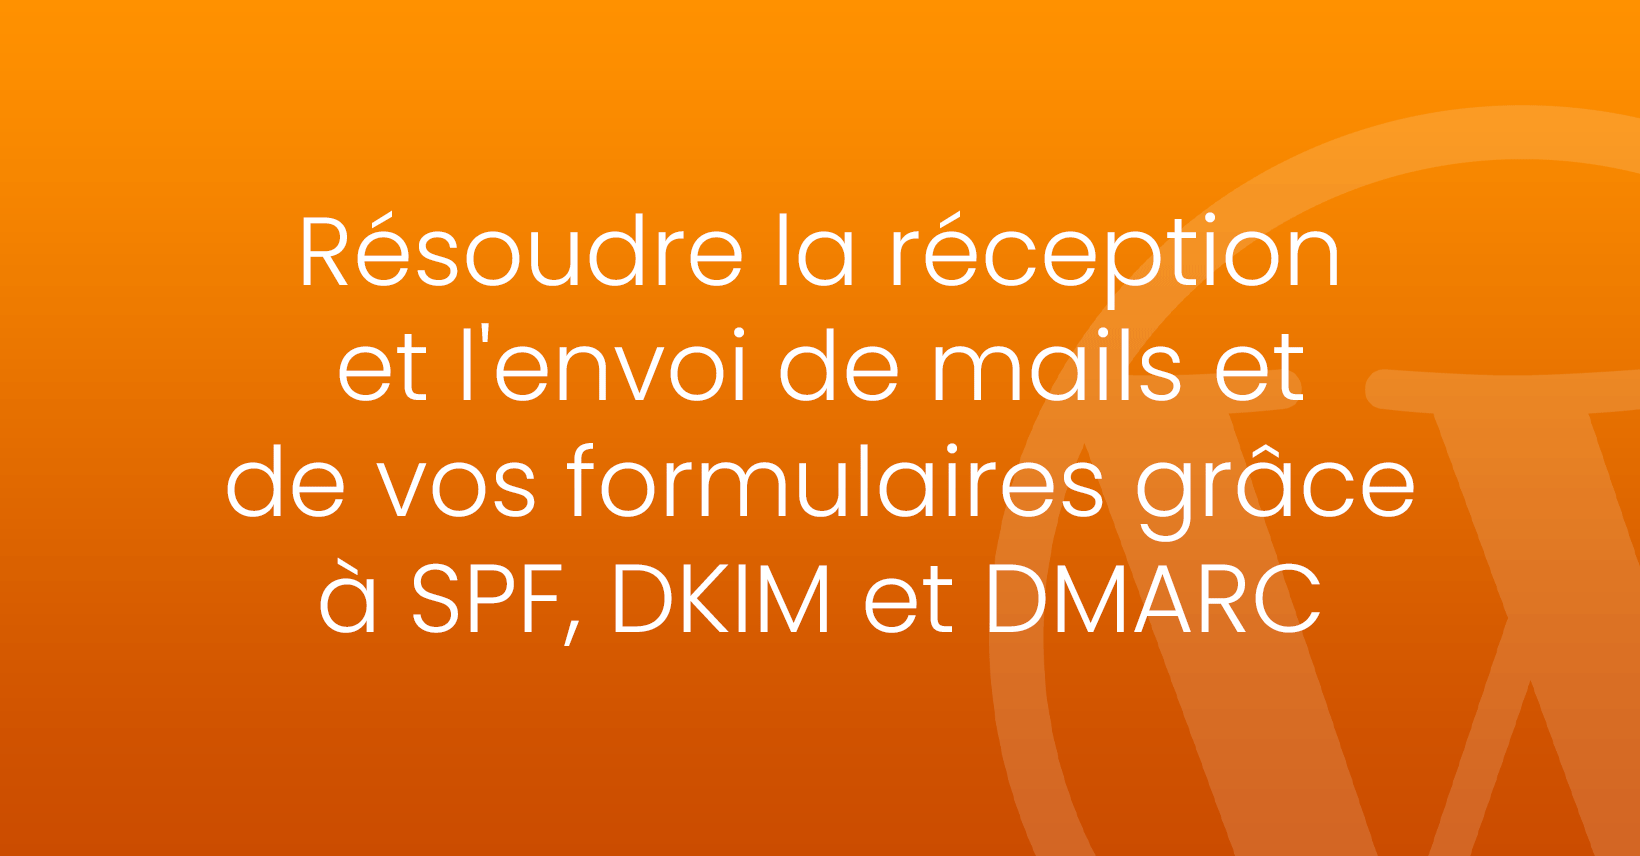 Résoudre la réception et l’envoi de mails grâce à SPF, DKIM et DMARC pour votre site